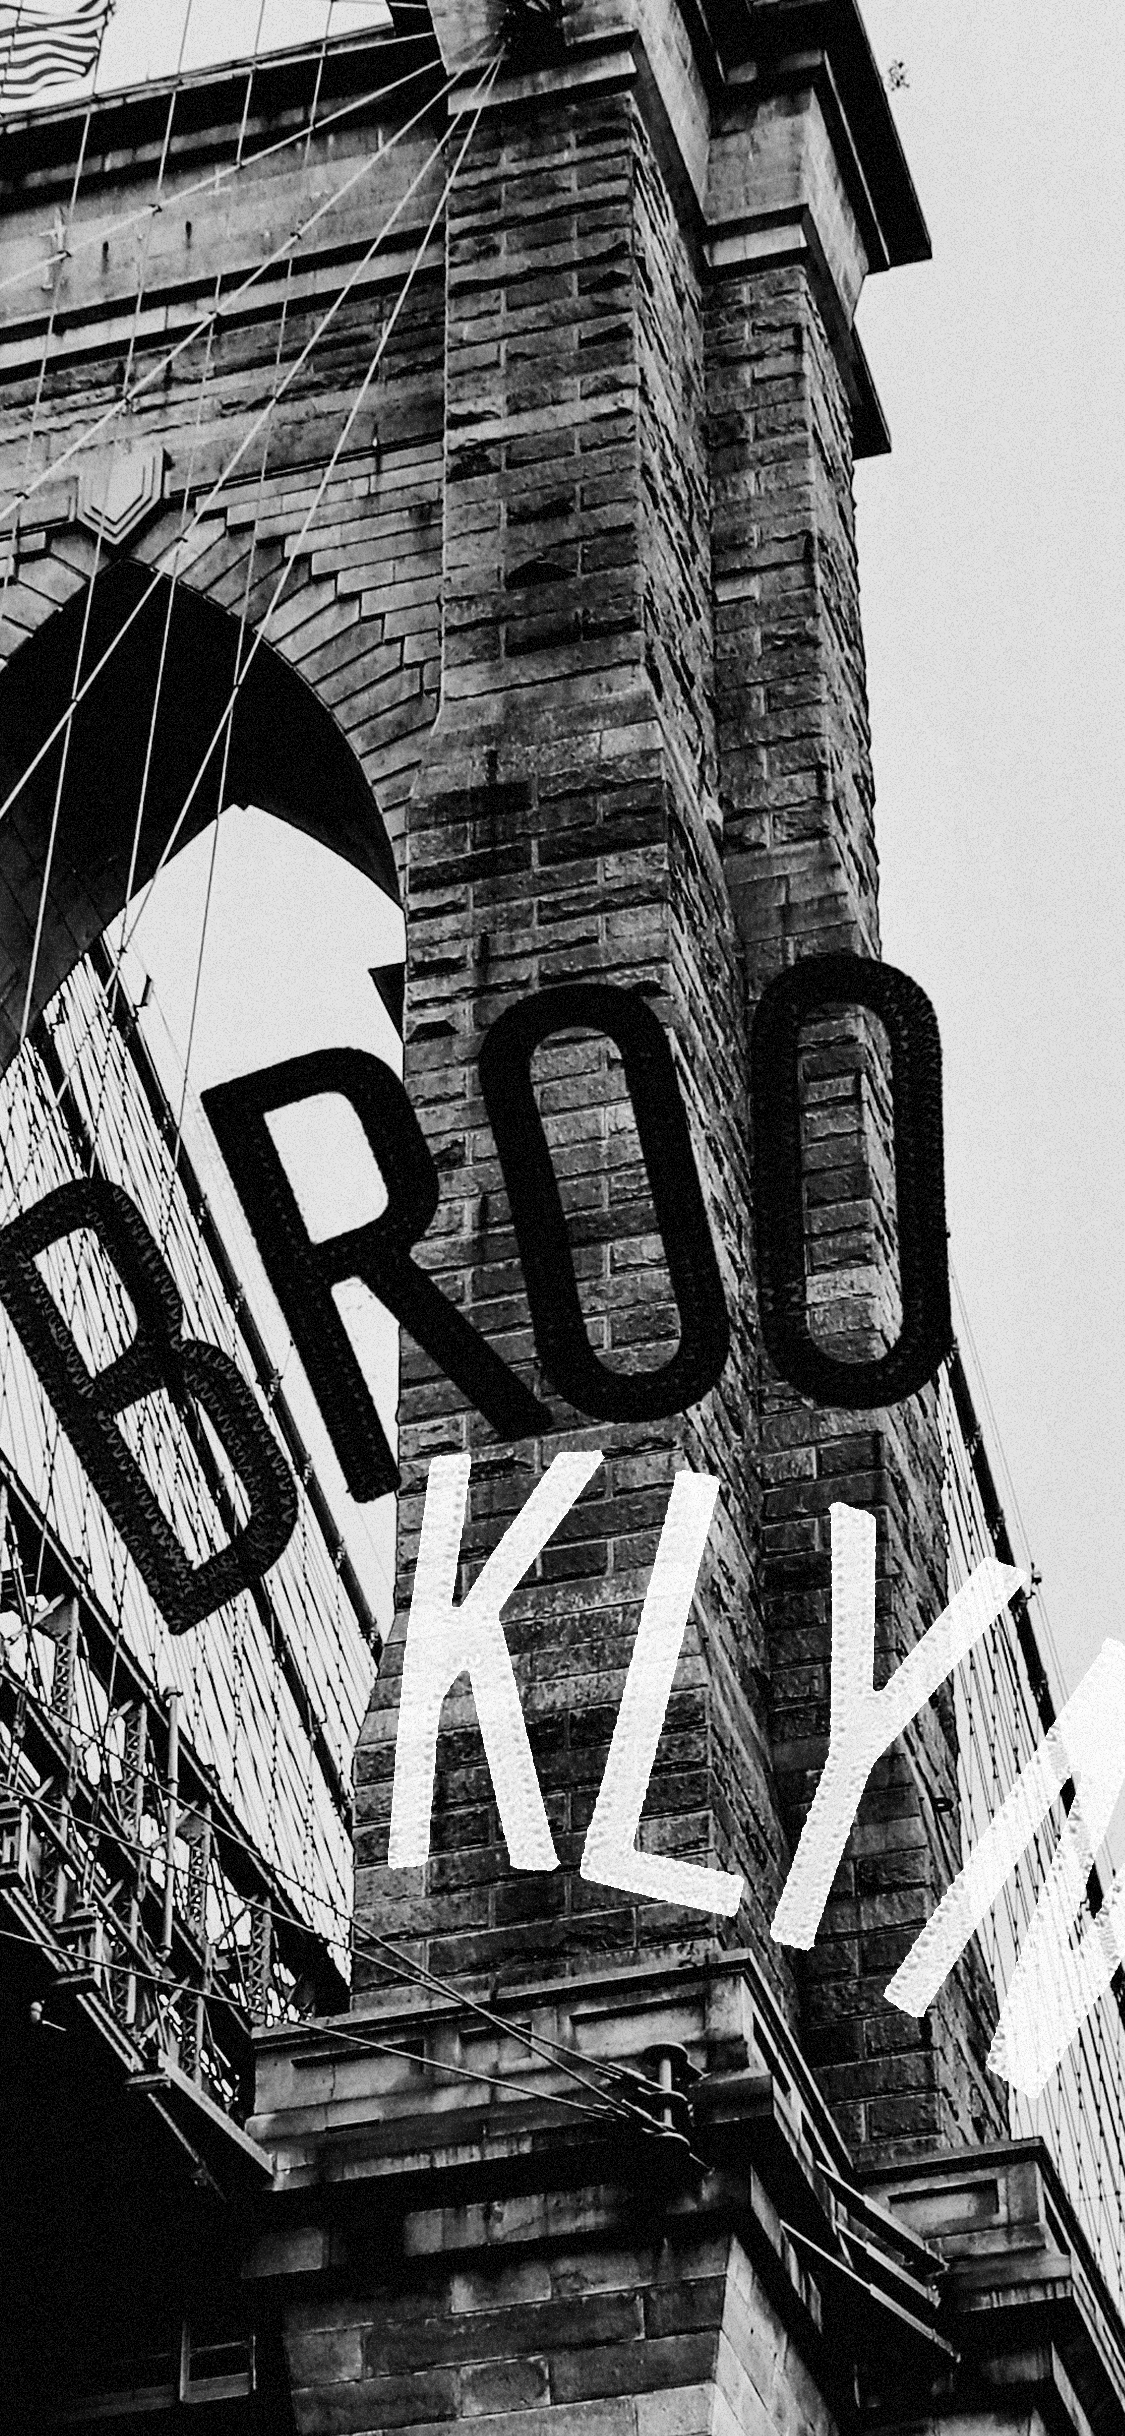 Brooklyn Nets - ⚫️⚪️ It's a